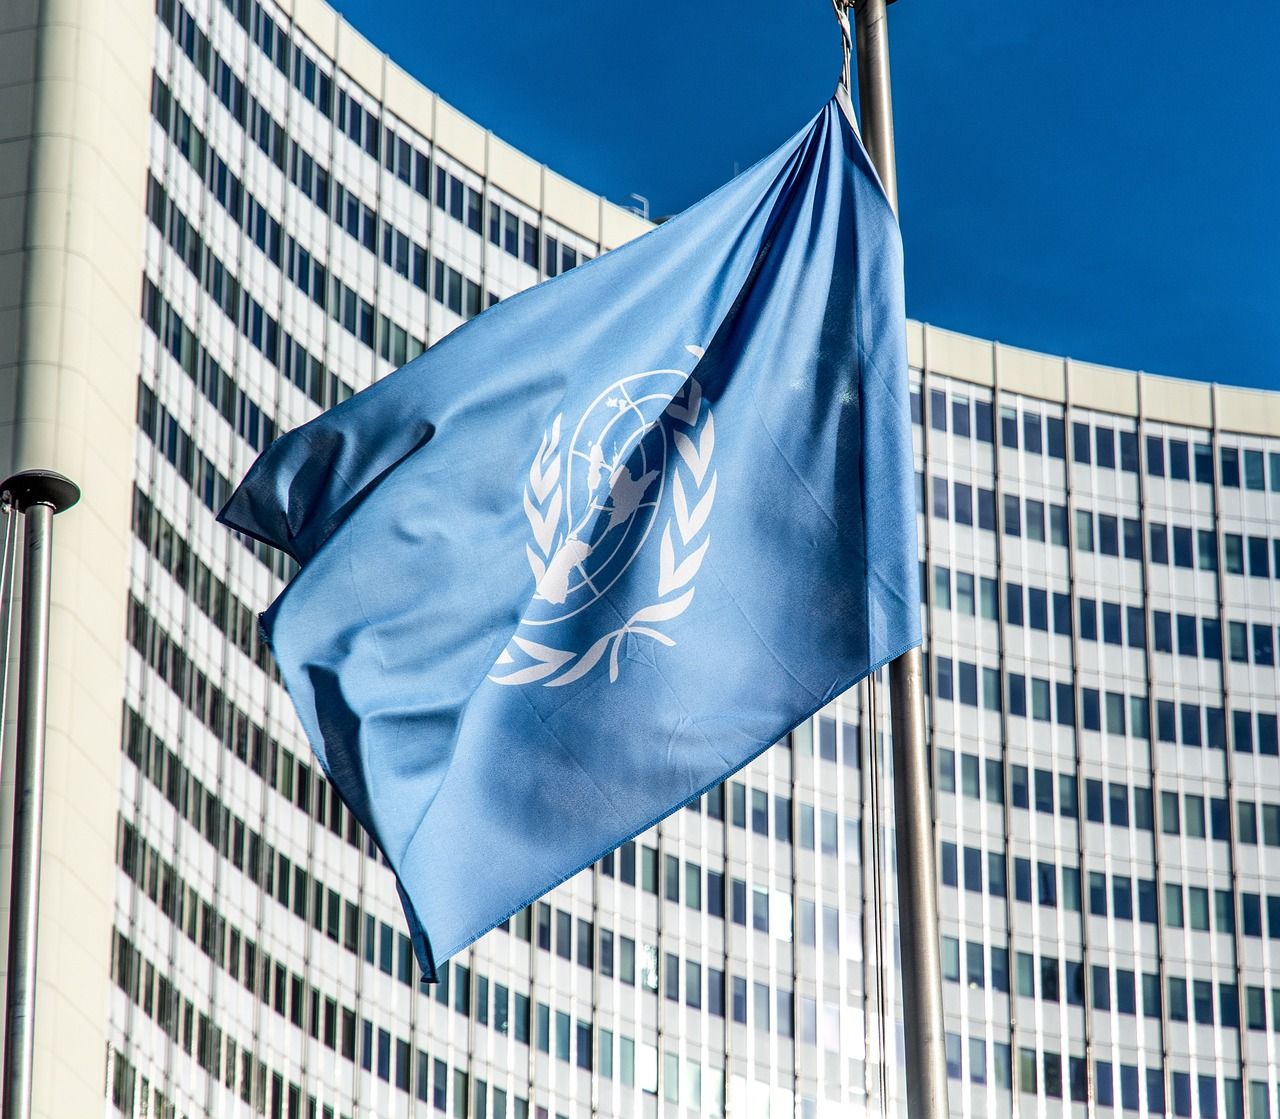 ООН сокращает расходы на найм персонала и кондиционирование воздуха из-за ограниченного бюджета